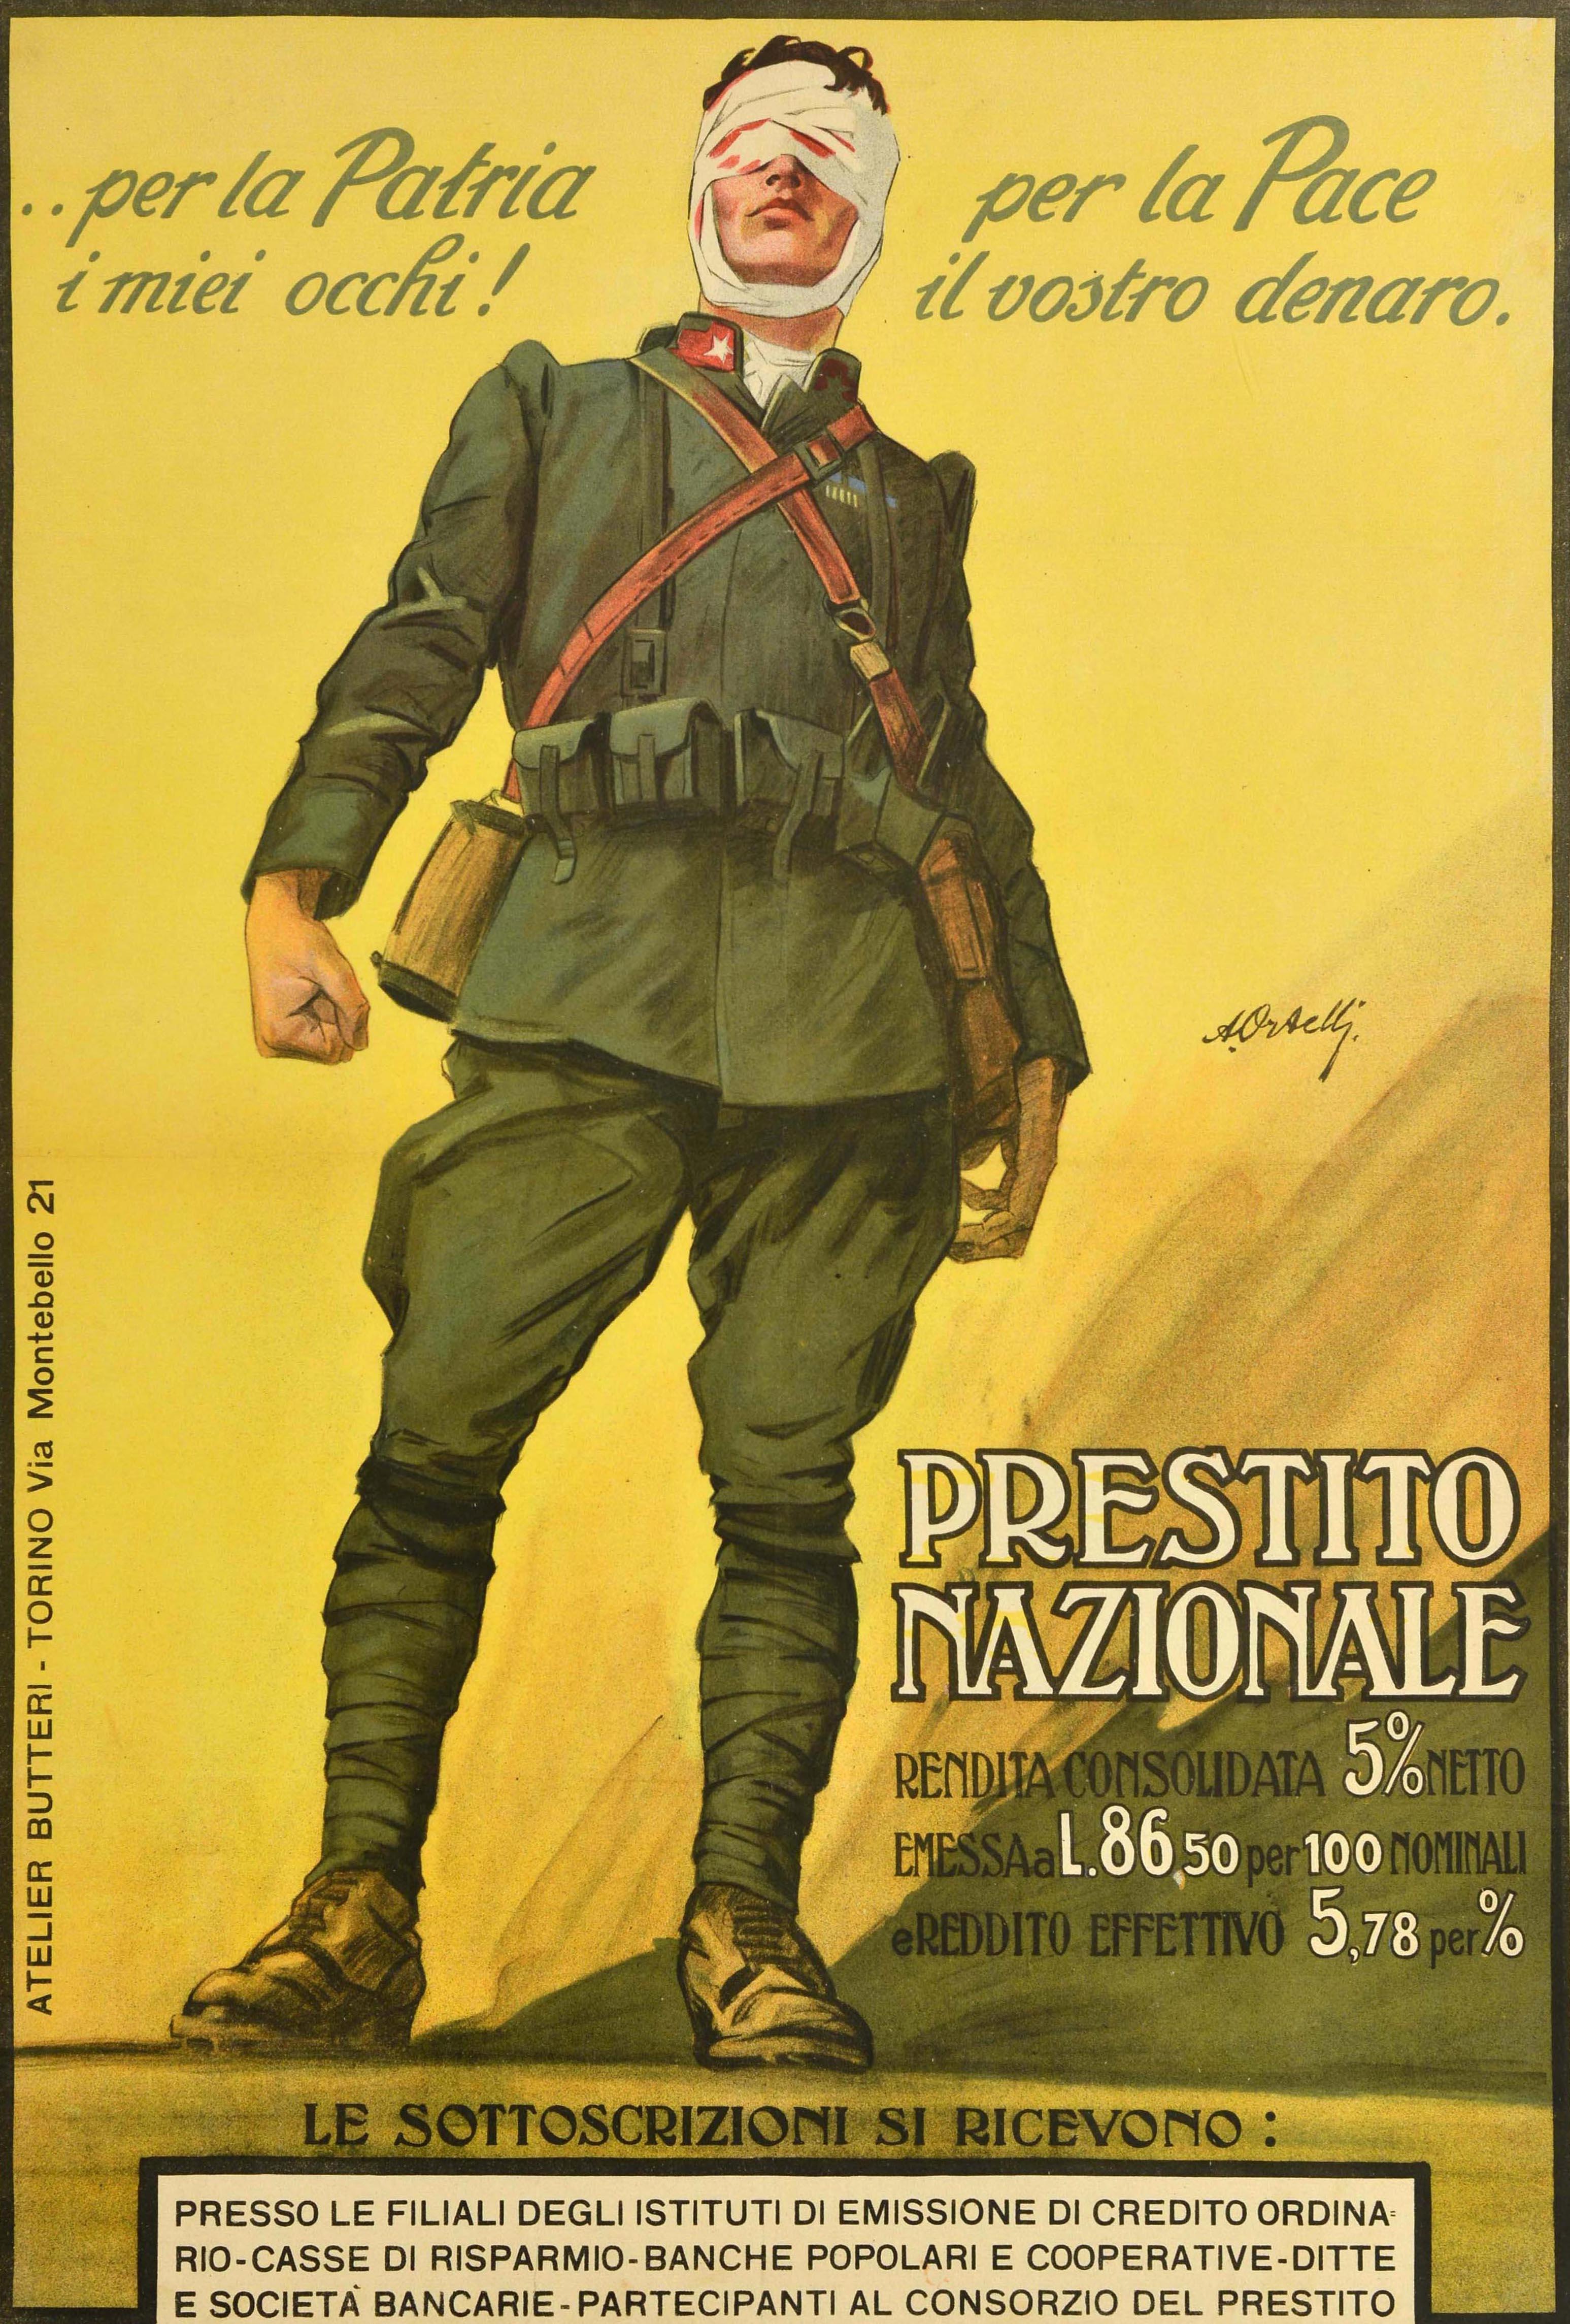 Originales antikes Kriegsanleiheplakat des Ersten Weltkriegs für die Nationale Anleihe / Prestito Nazionale mit dem Bild eines Bersaglieri-Soldaten in Militäruniform, der vor einem gelb schattierten Hintergrund steht und eine blutbefleckte Mullbinde